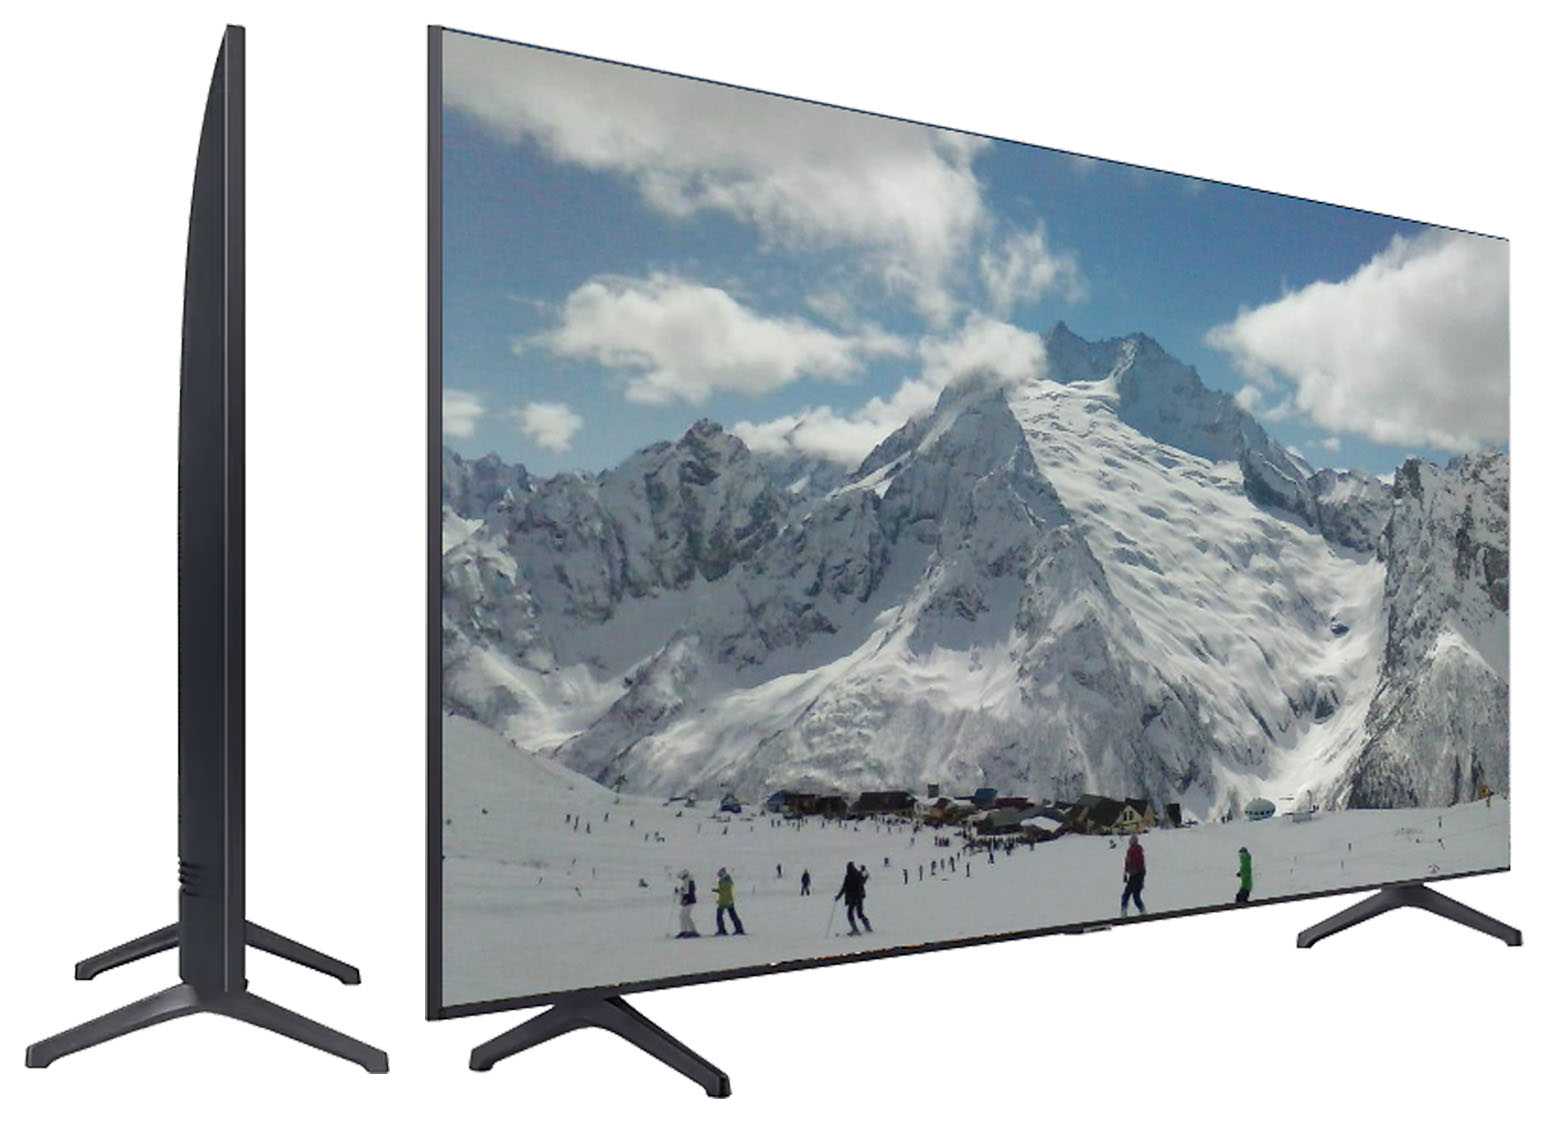 Обзор, тест и сравнение телевизоров samsung 43tu8000 и lg 43un8100 2020 года. - выбор телевизора